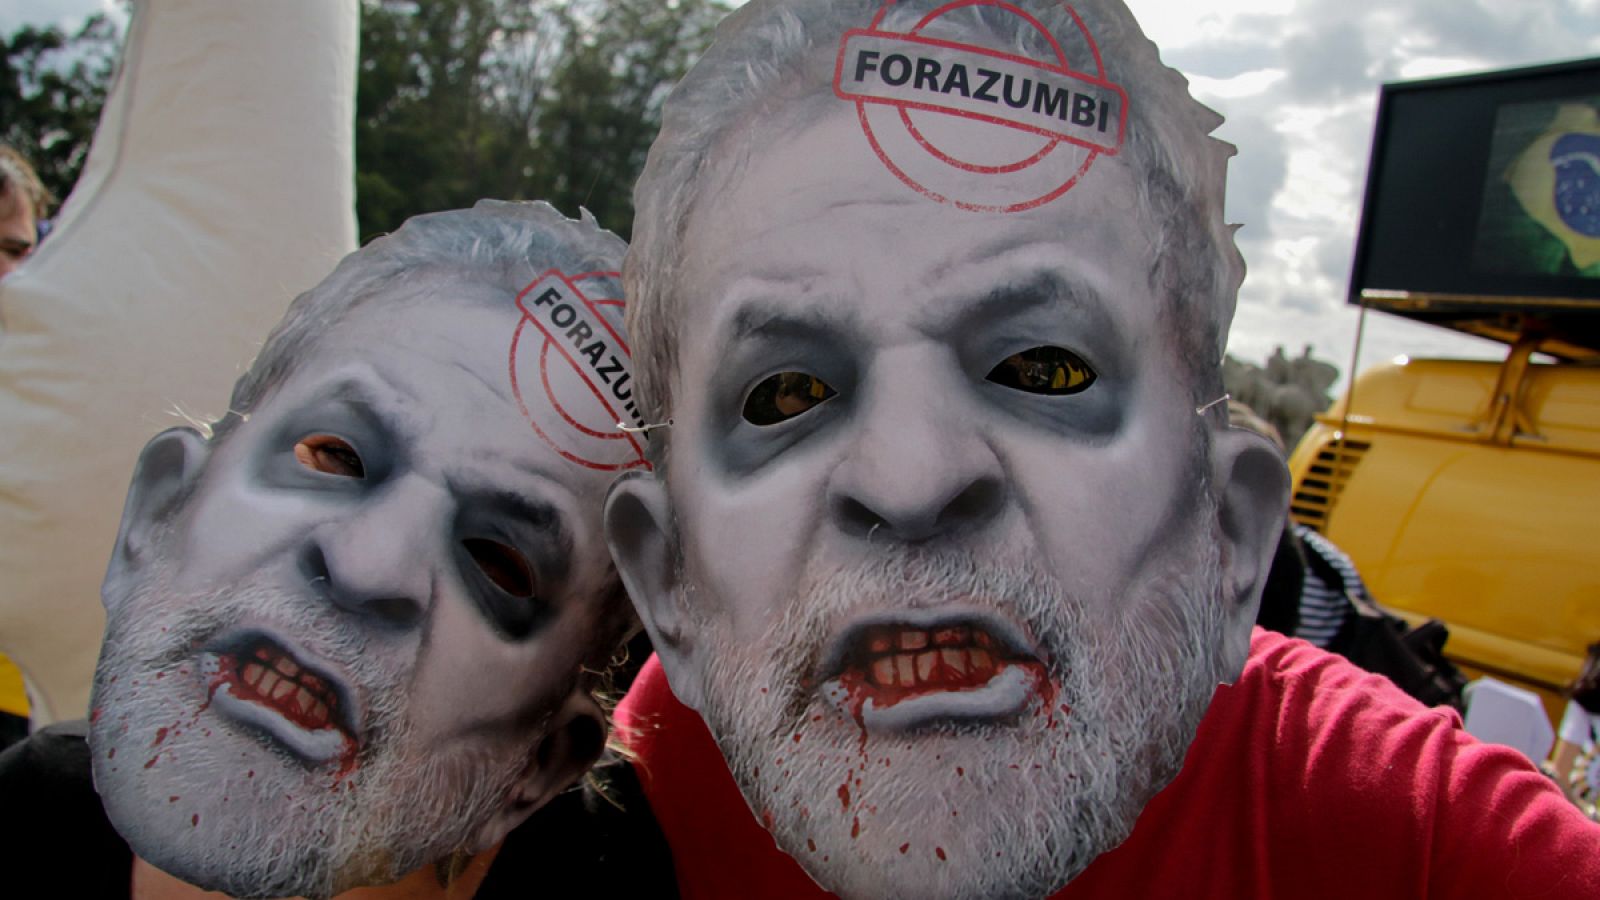 Opositores del gobierno de Rousseff participan con máscaras del expresidente Lula en un carnaval anticipado por las calles de Sao Paulo